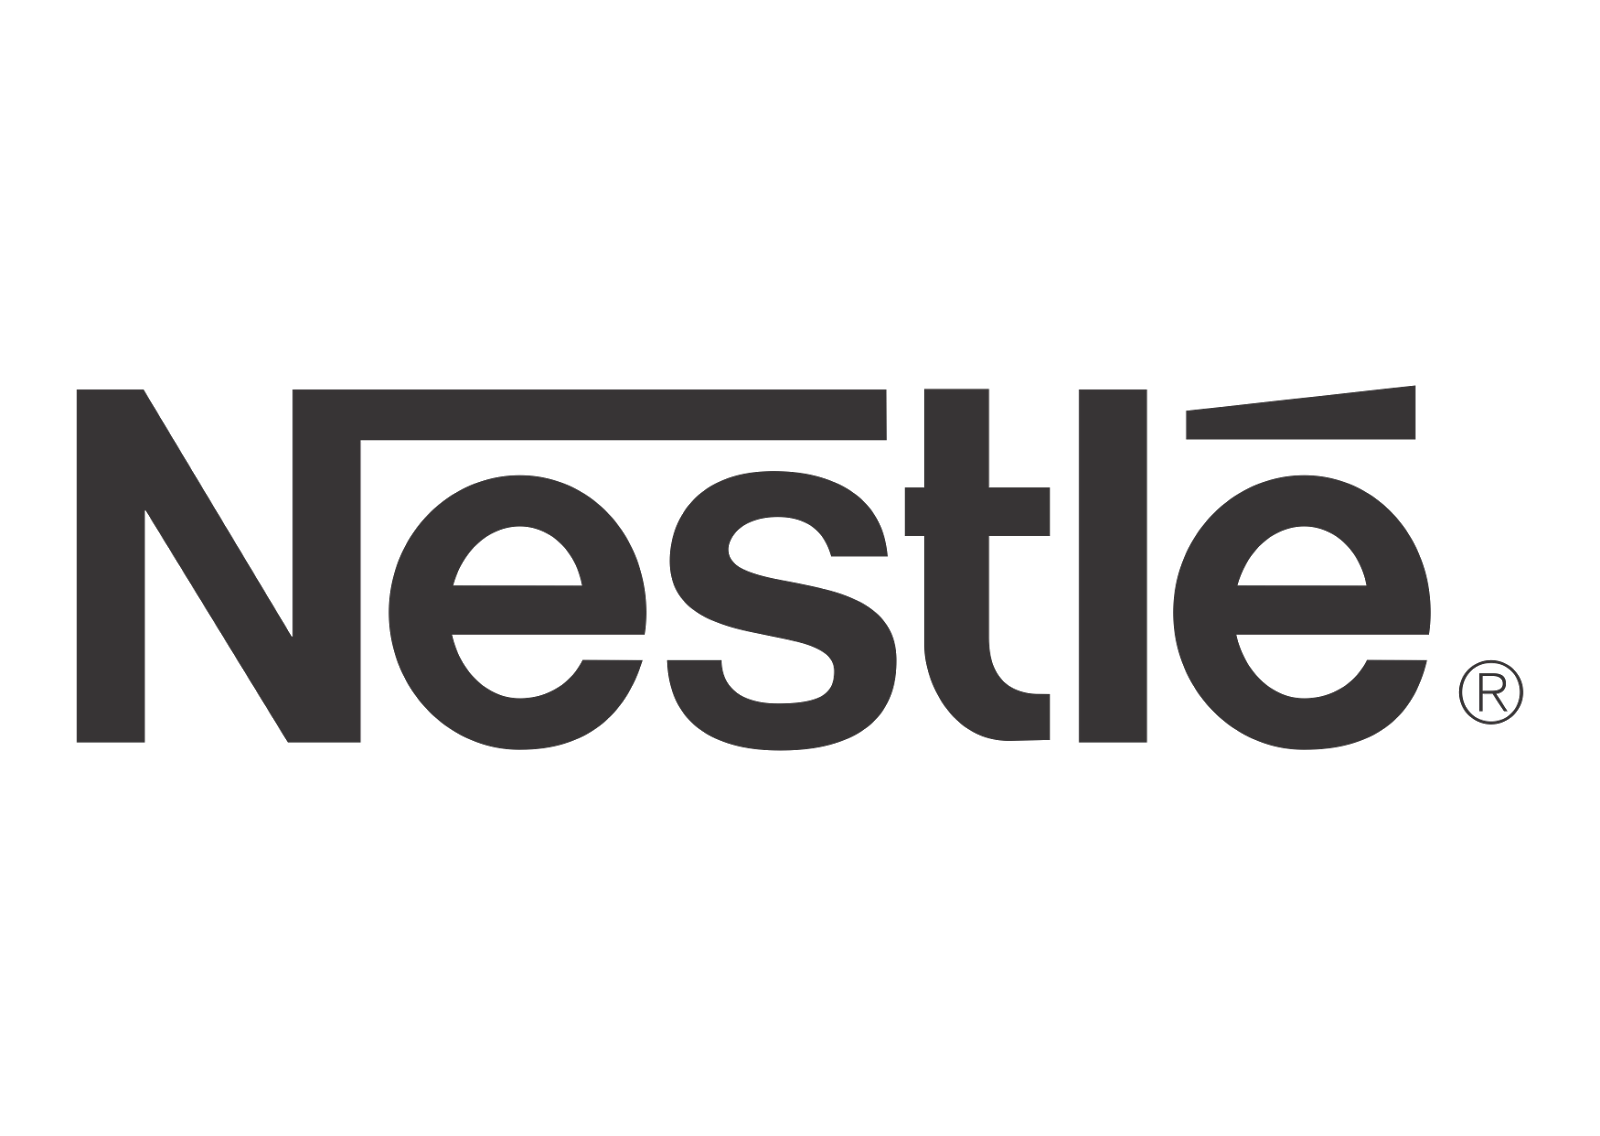 Nestle bird logo Free vector 